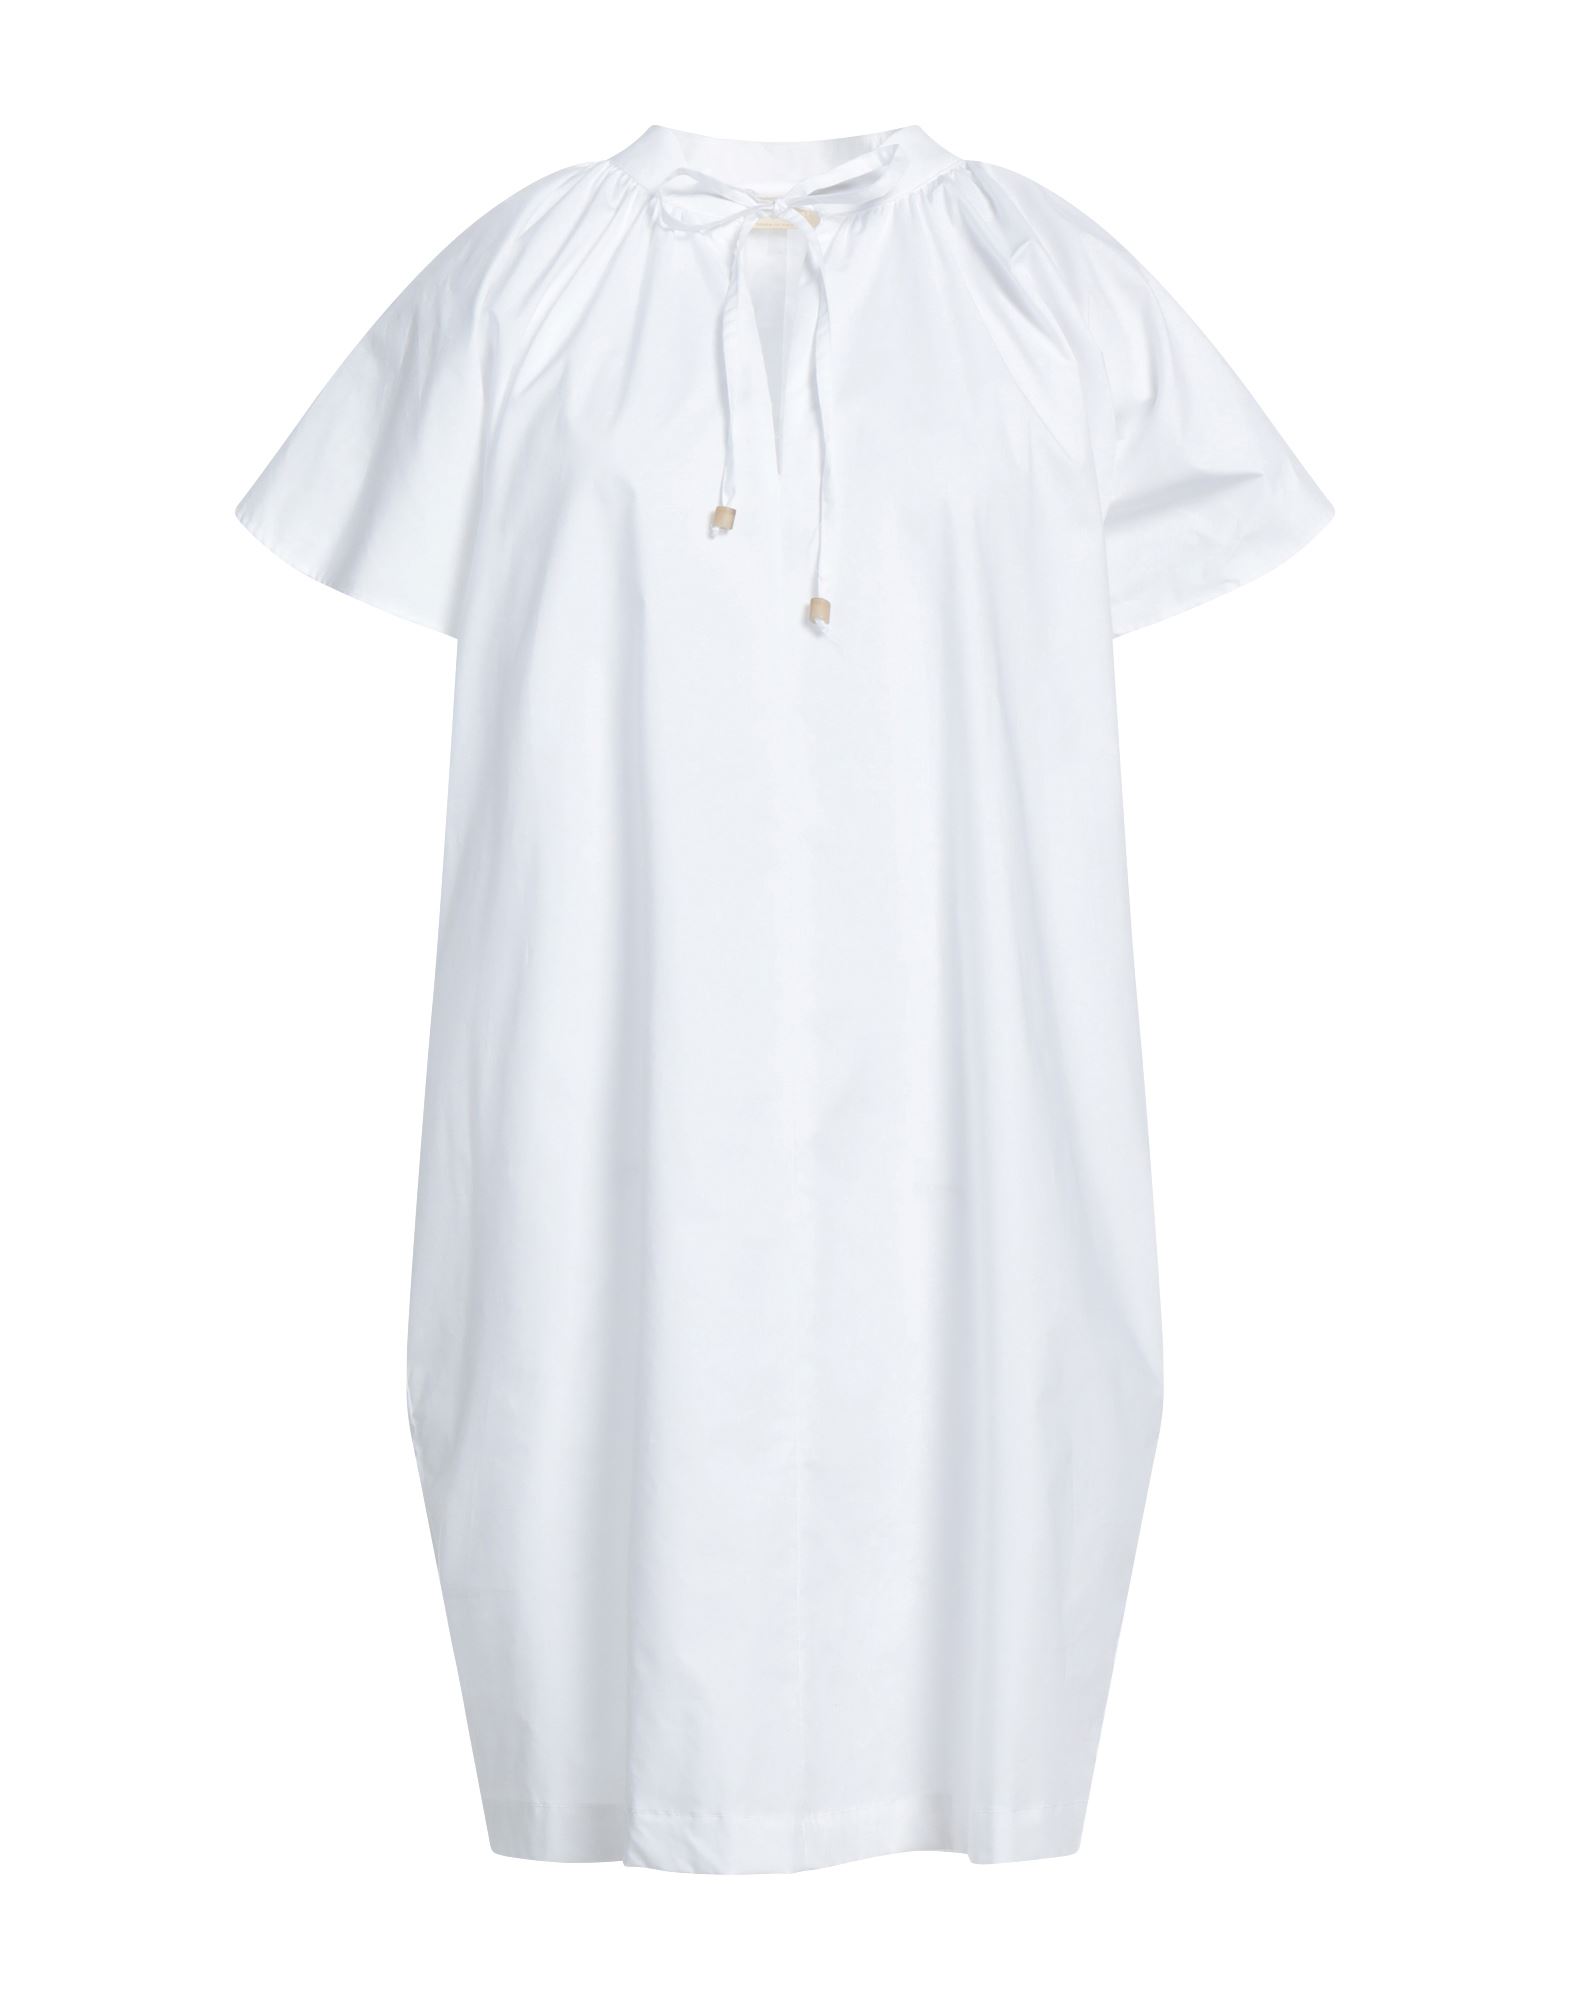 Momoní Woman Mini Dress White Size 6 Cotton